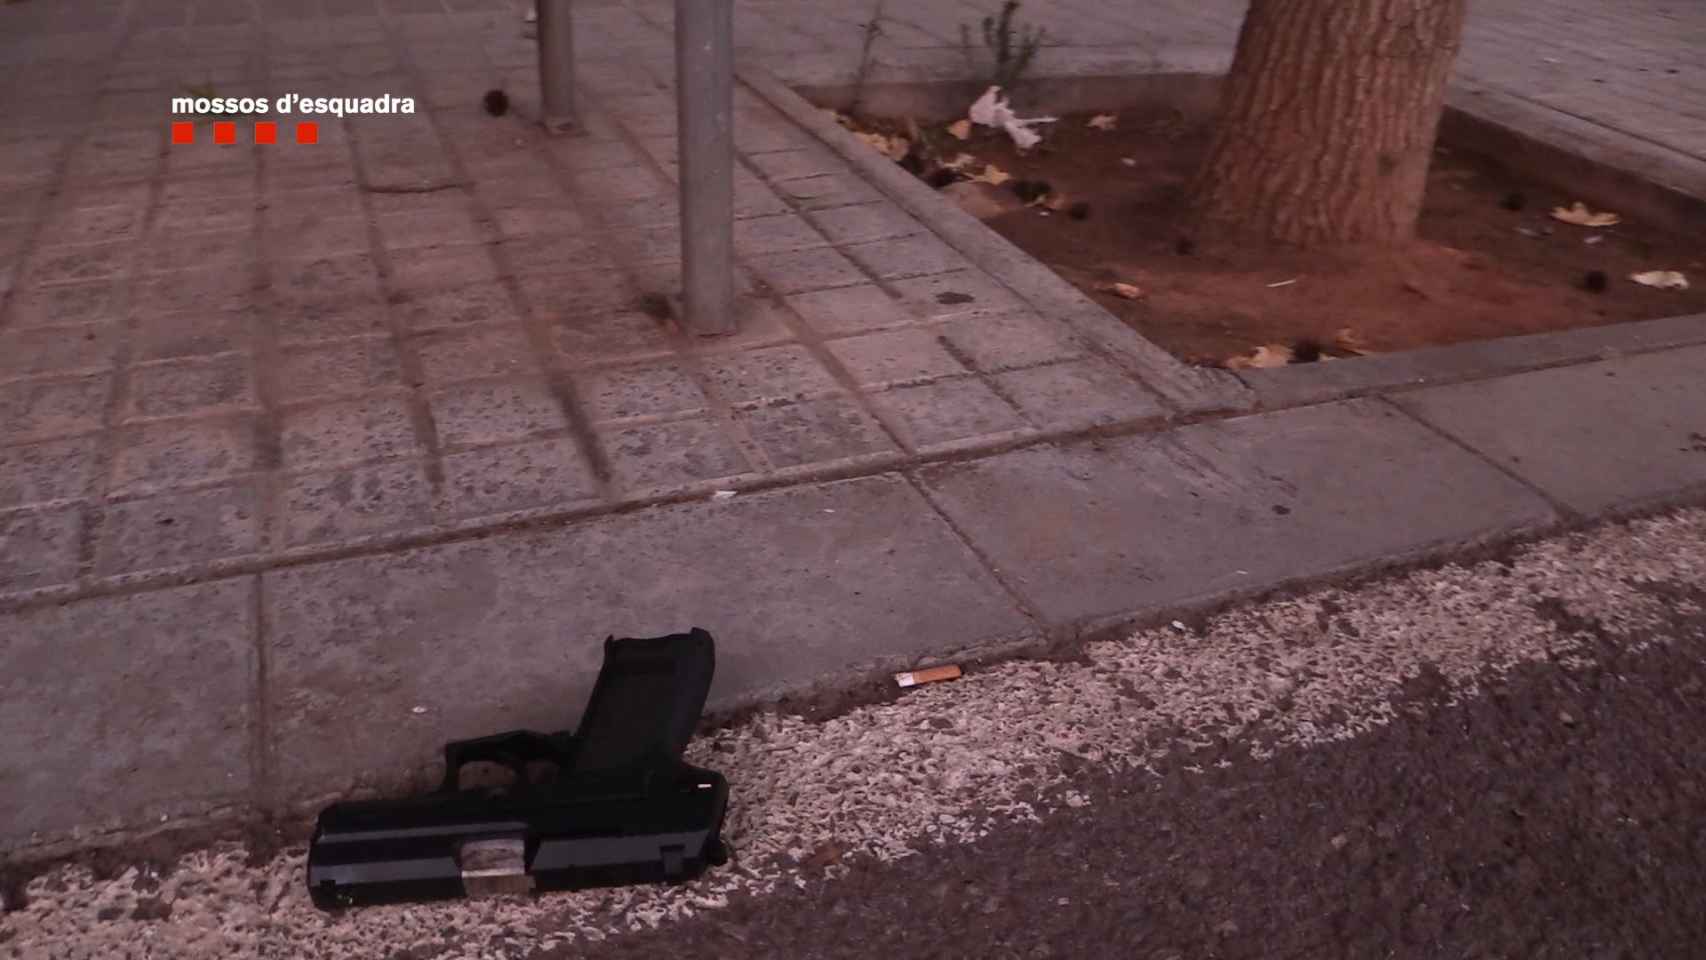 Pistola intervenida por los Mossos d'Esquadra en otra ocasión ajena al tiroteo del Poblenou